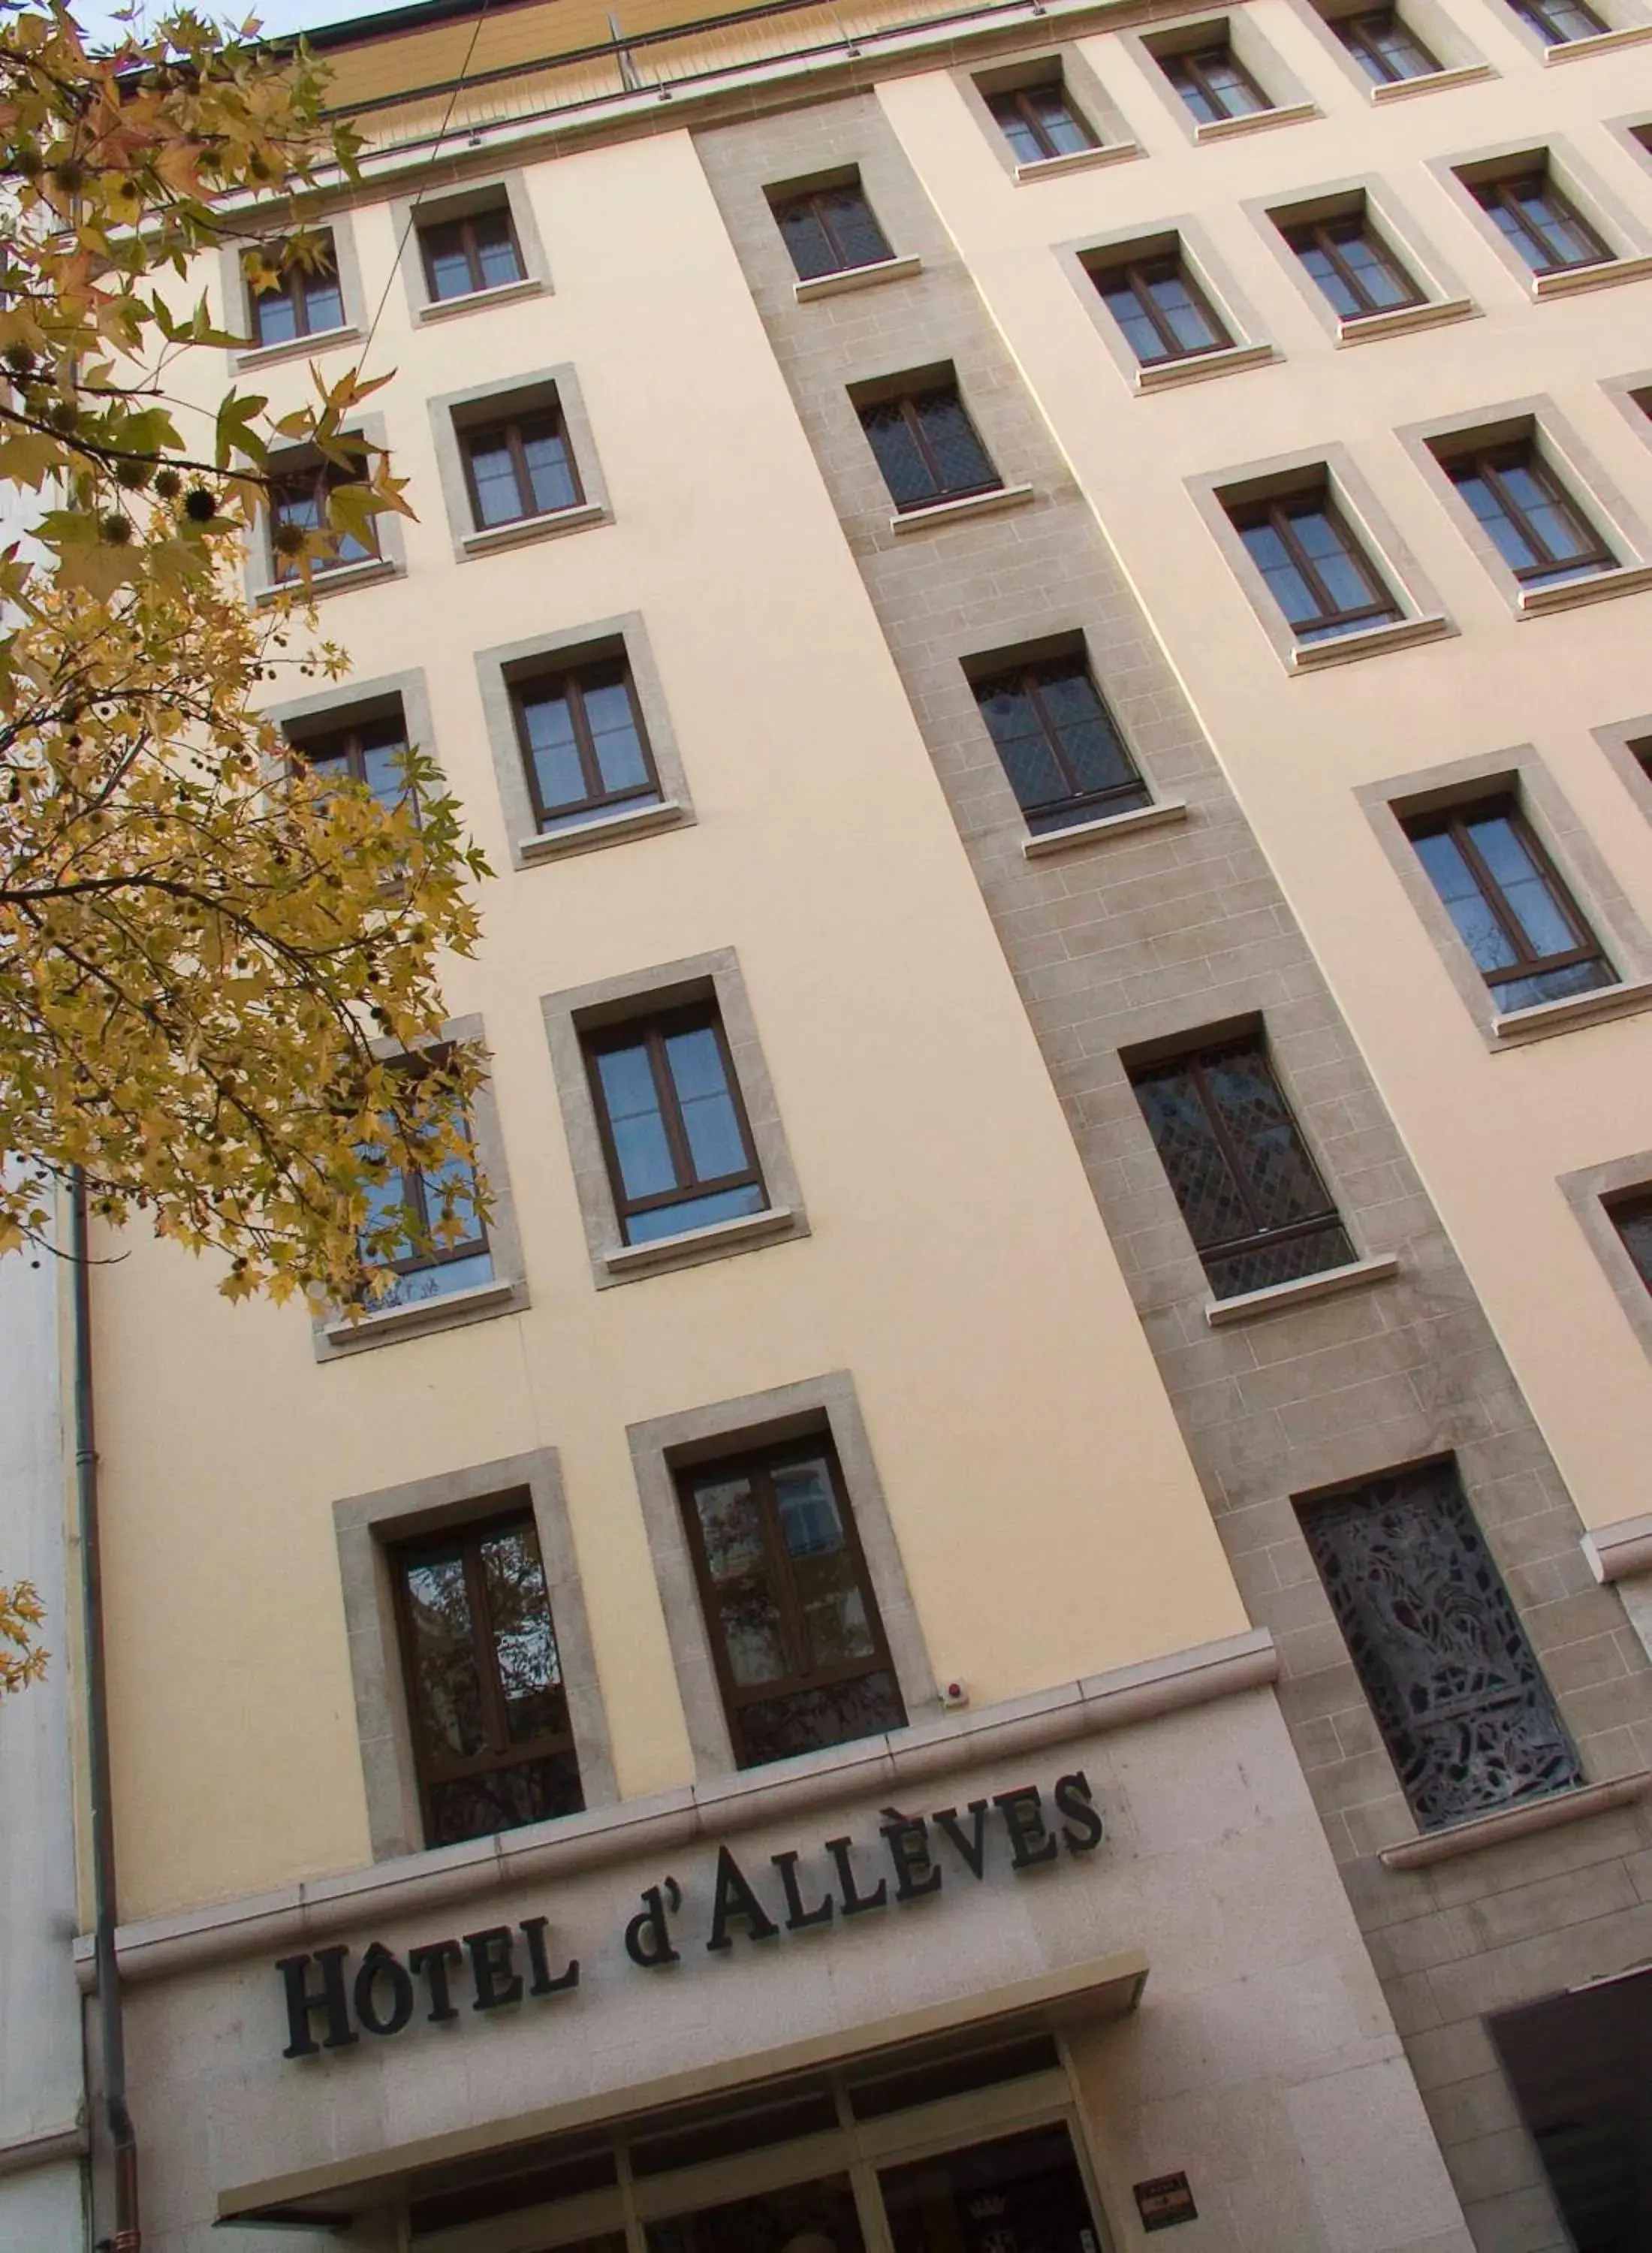 Facade/entrance, Property Building in Hotel d'Allèves